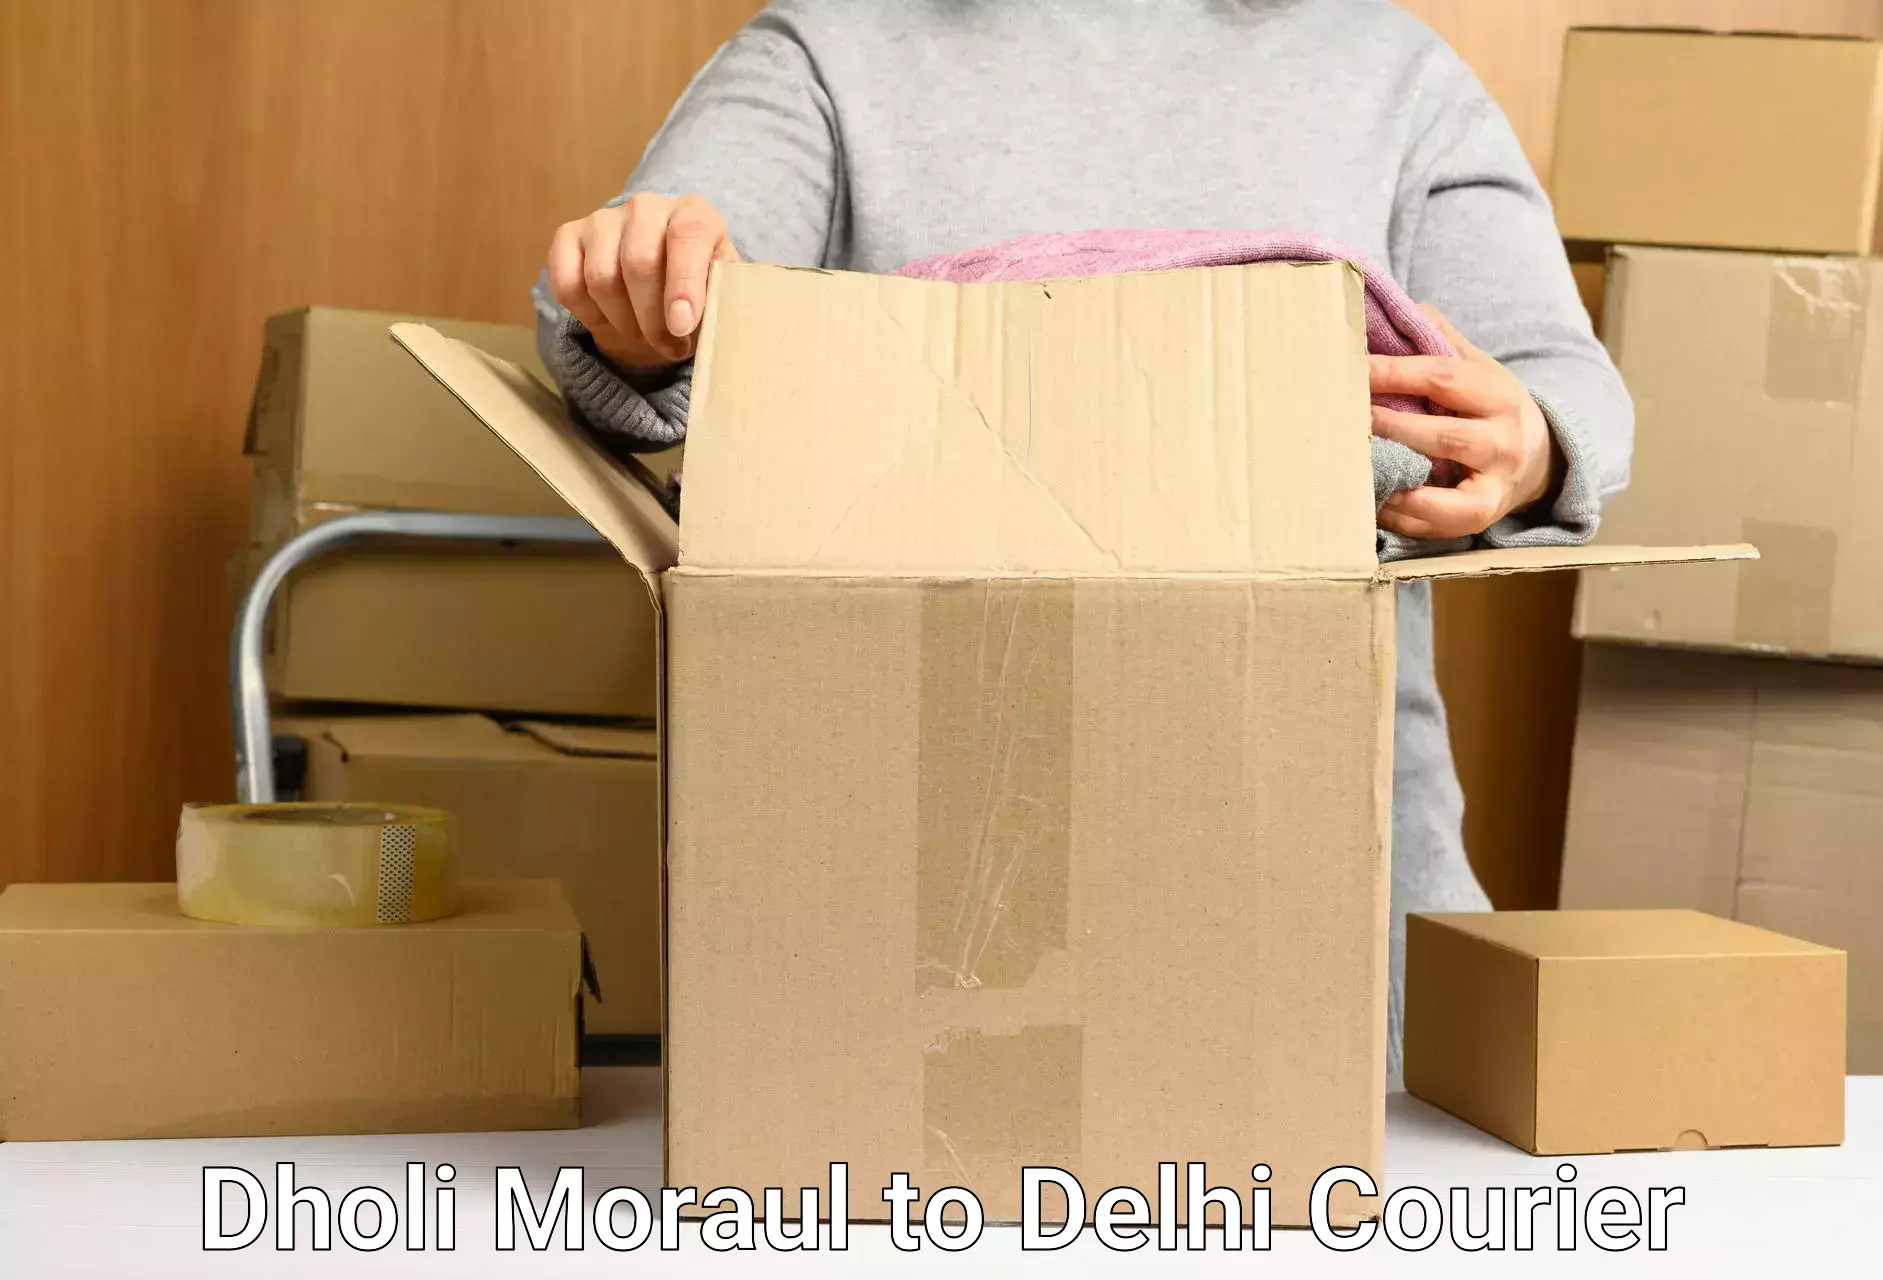 Door-to-door freight service Dholi Moraul to Delhi